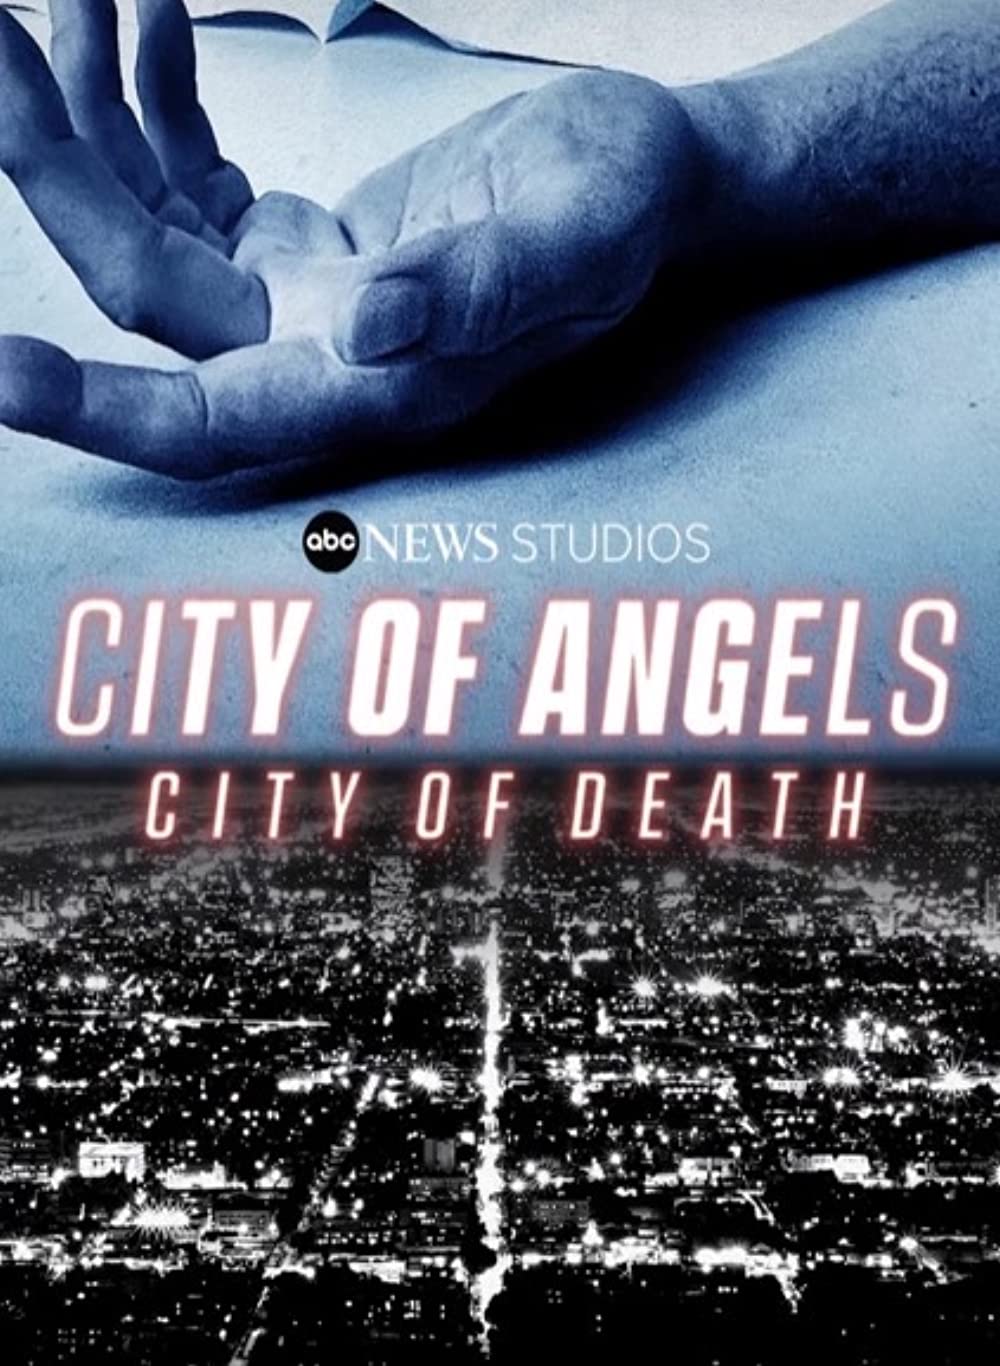 L.A. City of Death